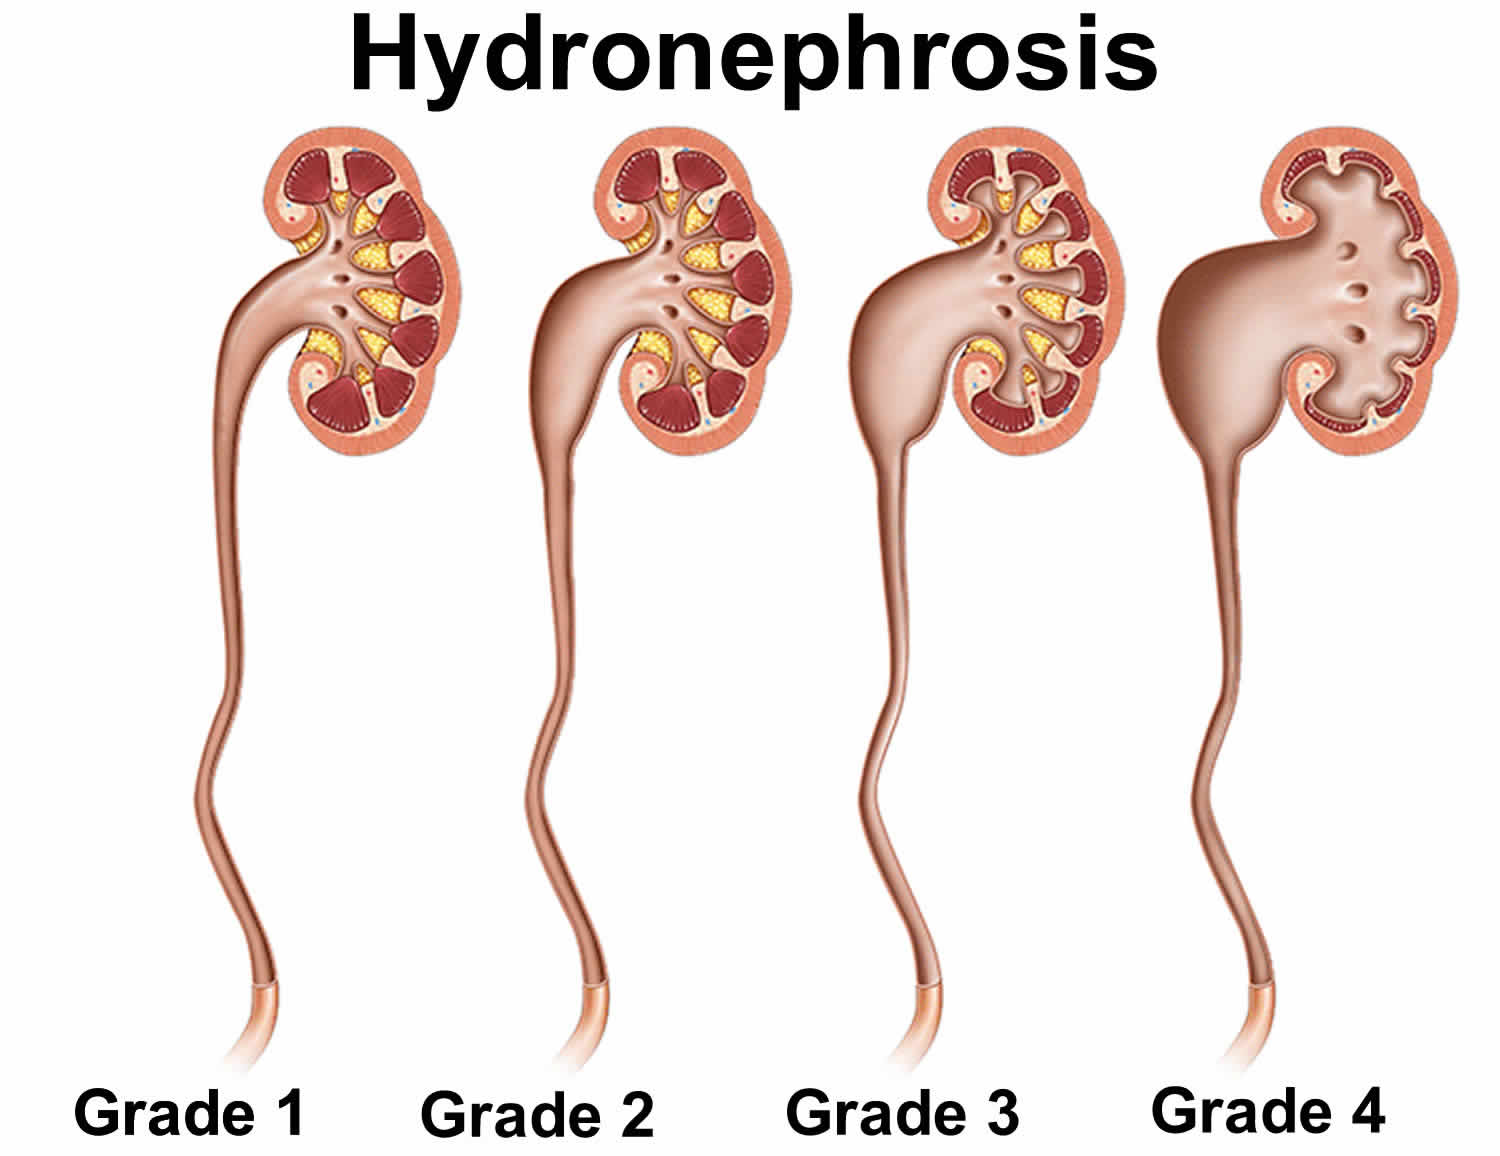 hydronephrosis